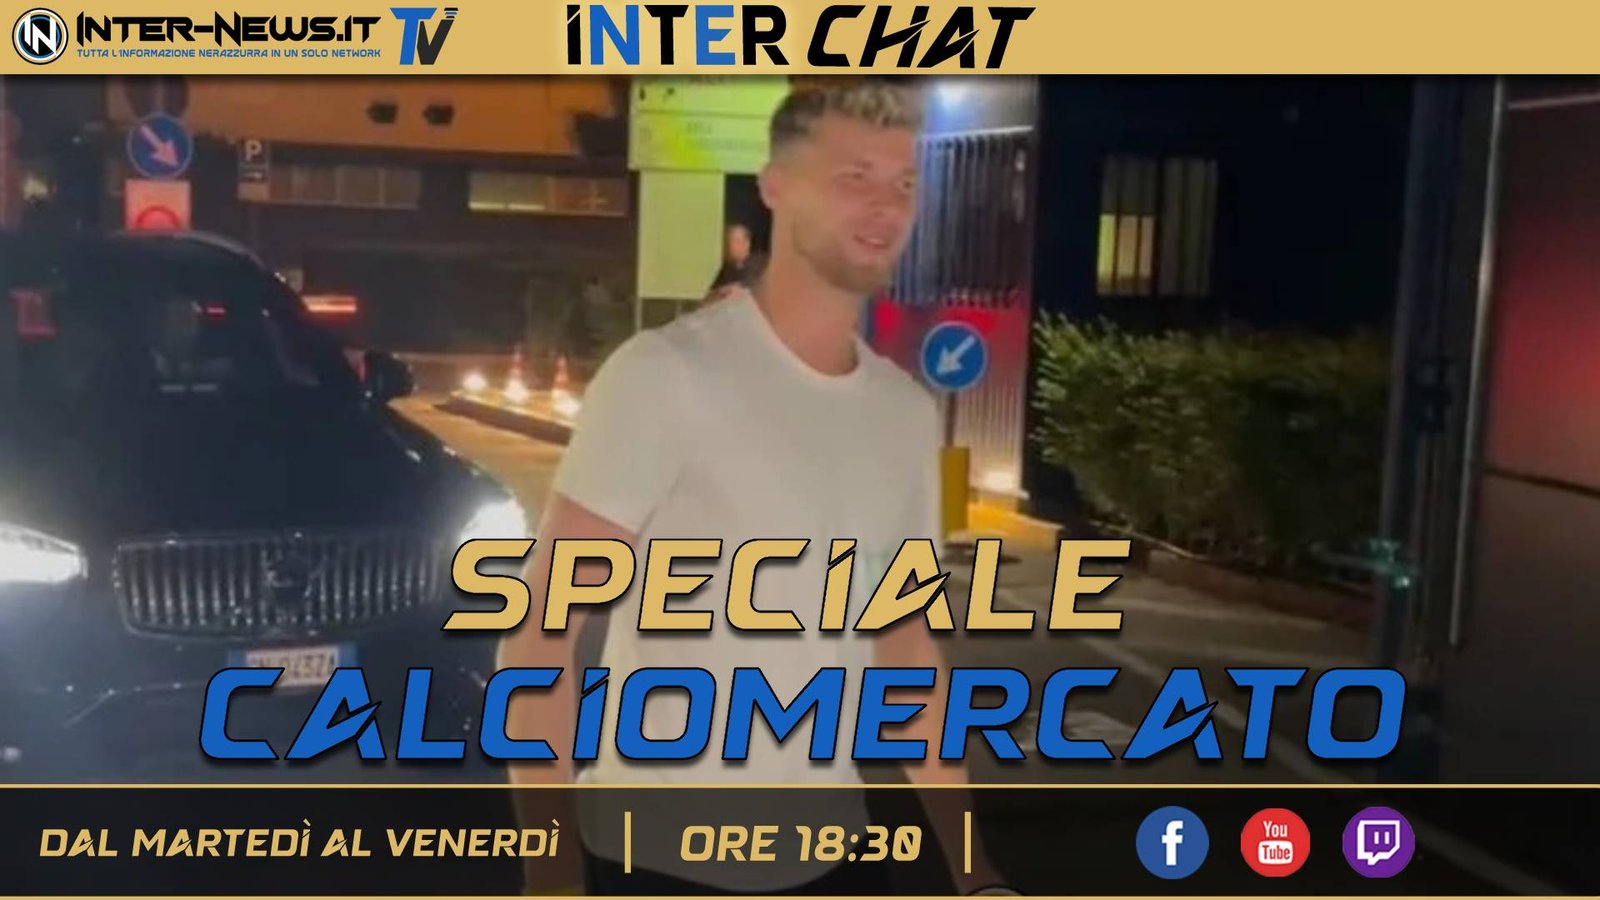 VIDEO – Speciale Calciomercato, il giorno di Martinez! | Inter Chat